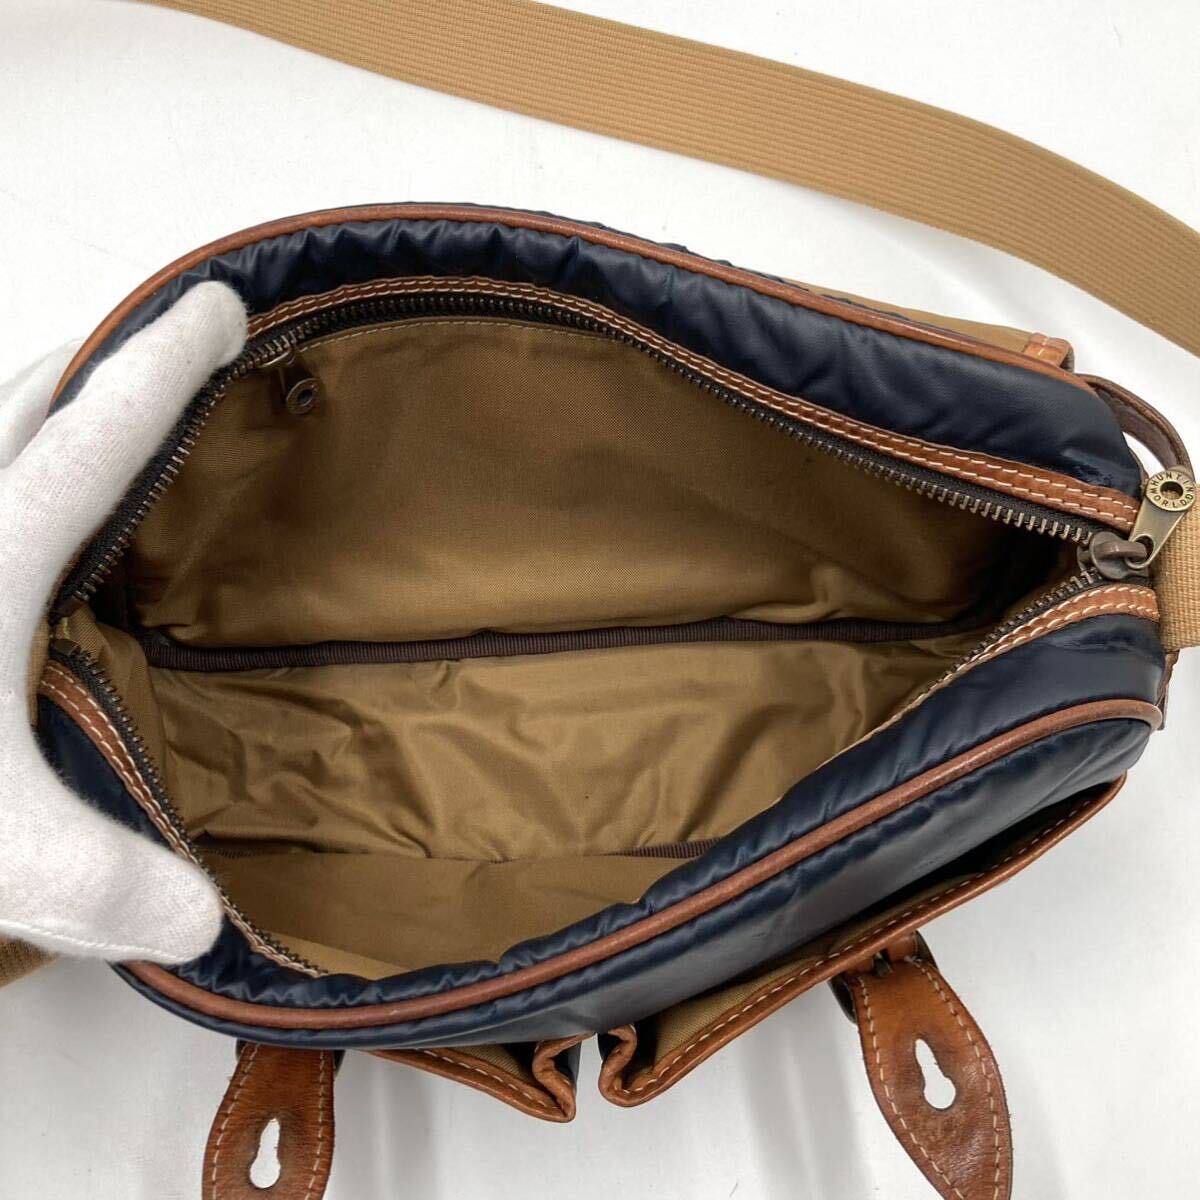 1 jpy [ hard-to-find ] Hunting World HUNTING WORLD messenger bag shoulder bag chopsticks .- Cross leather original leather men's business 